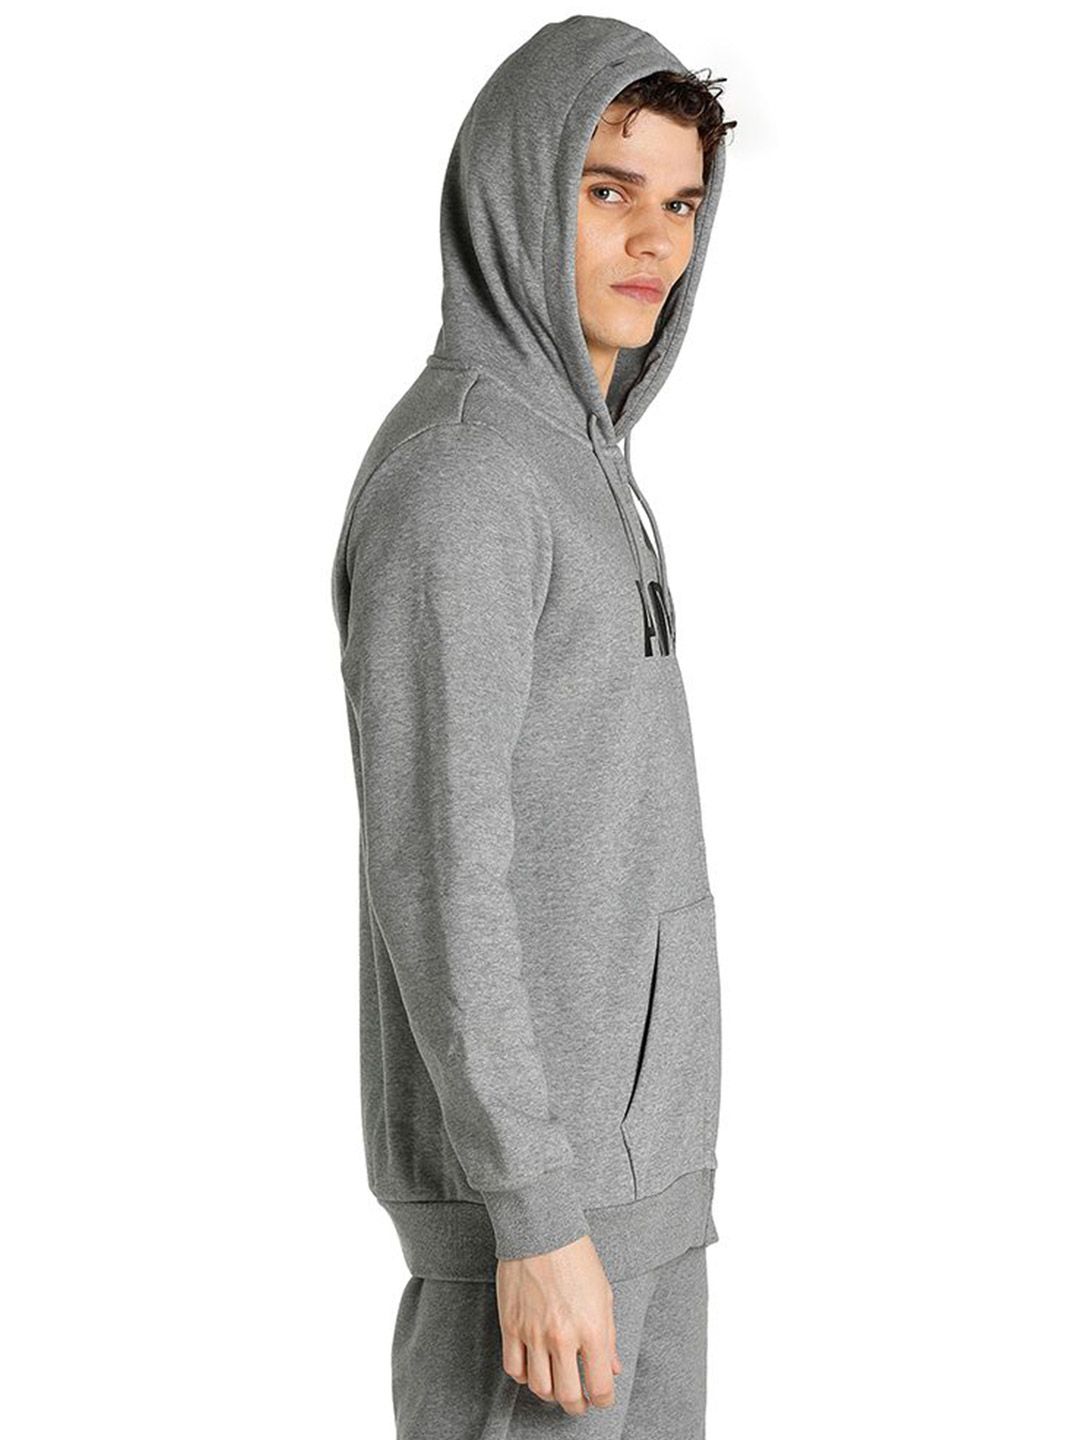 Buy Men Grey Sportswear Club Fleece Solid Hoodies From Fancode Shop.